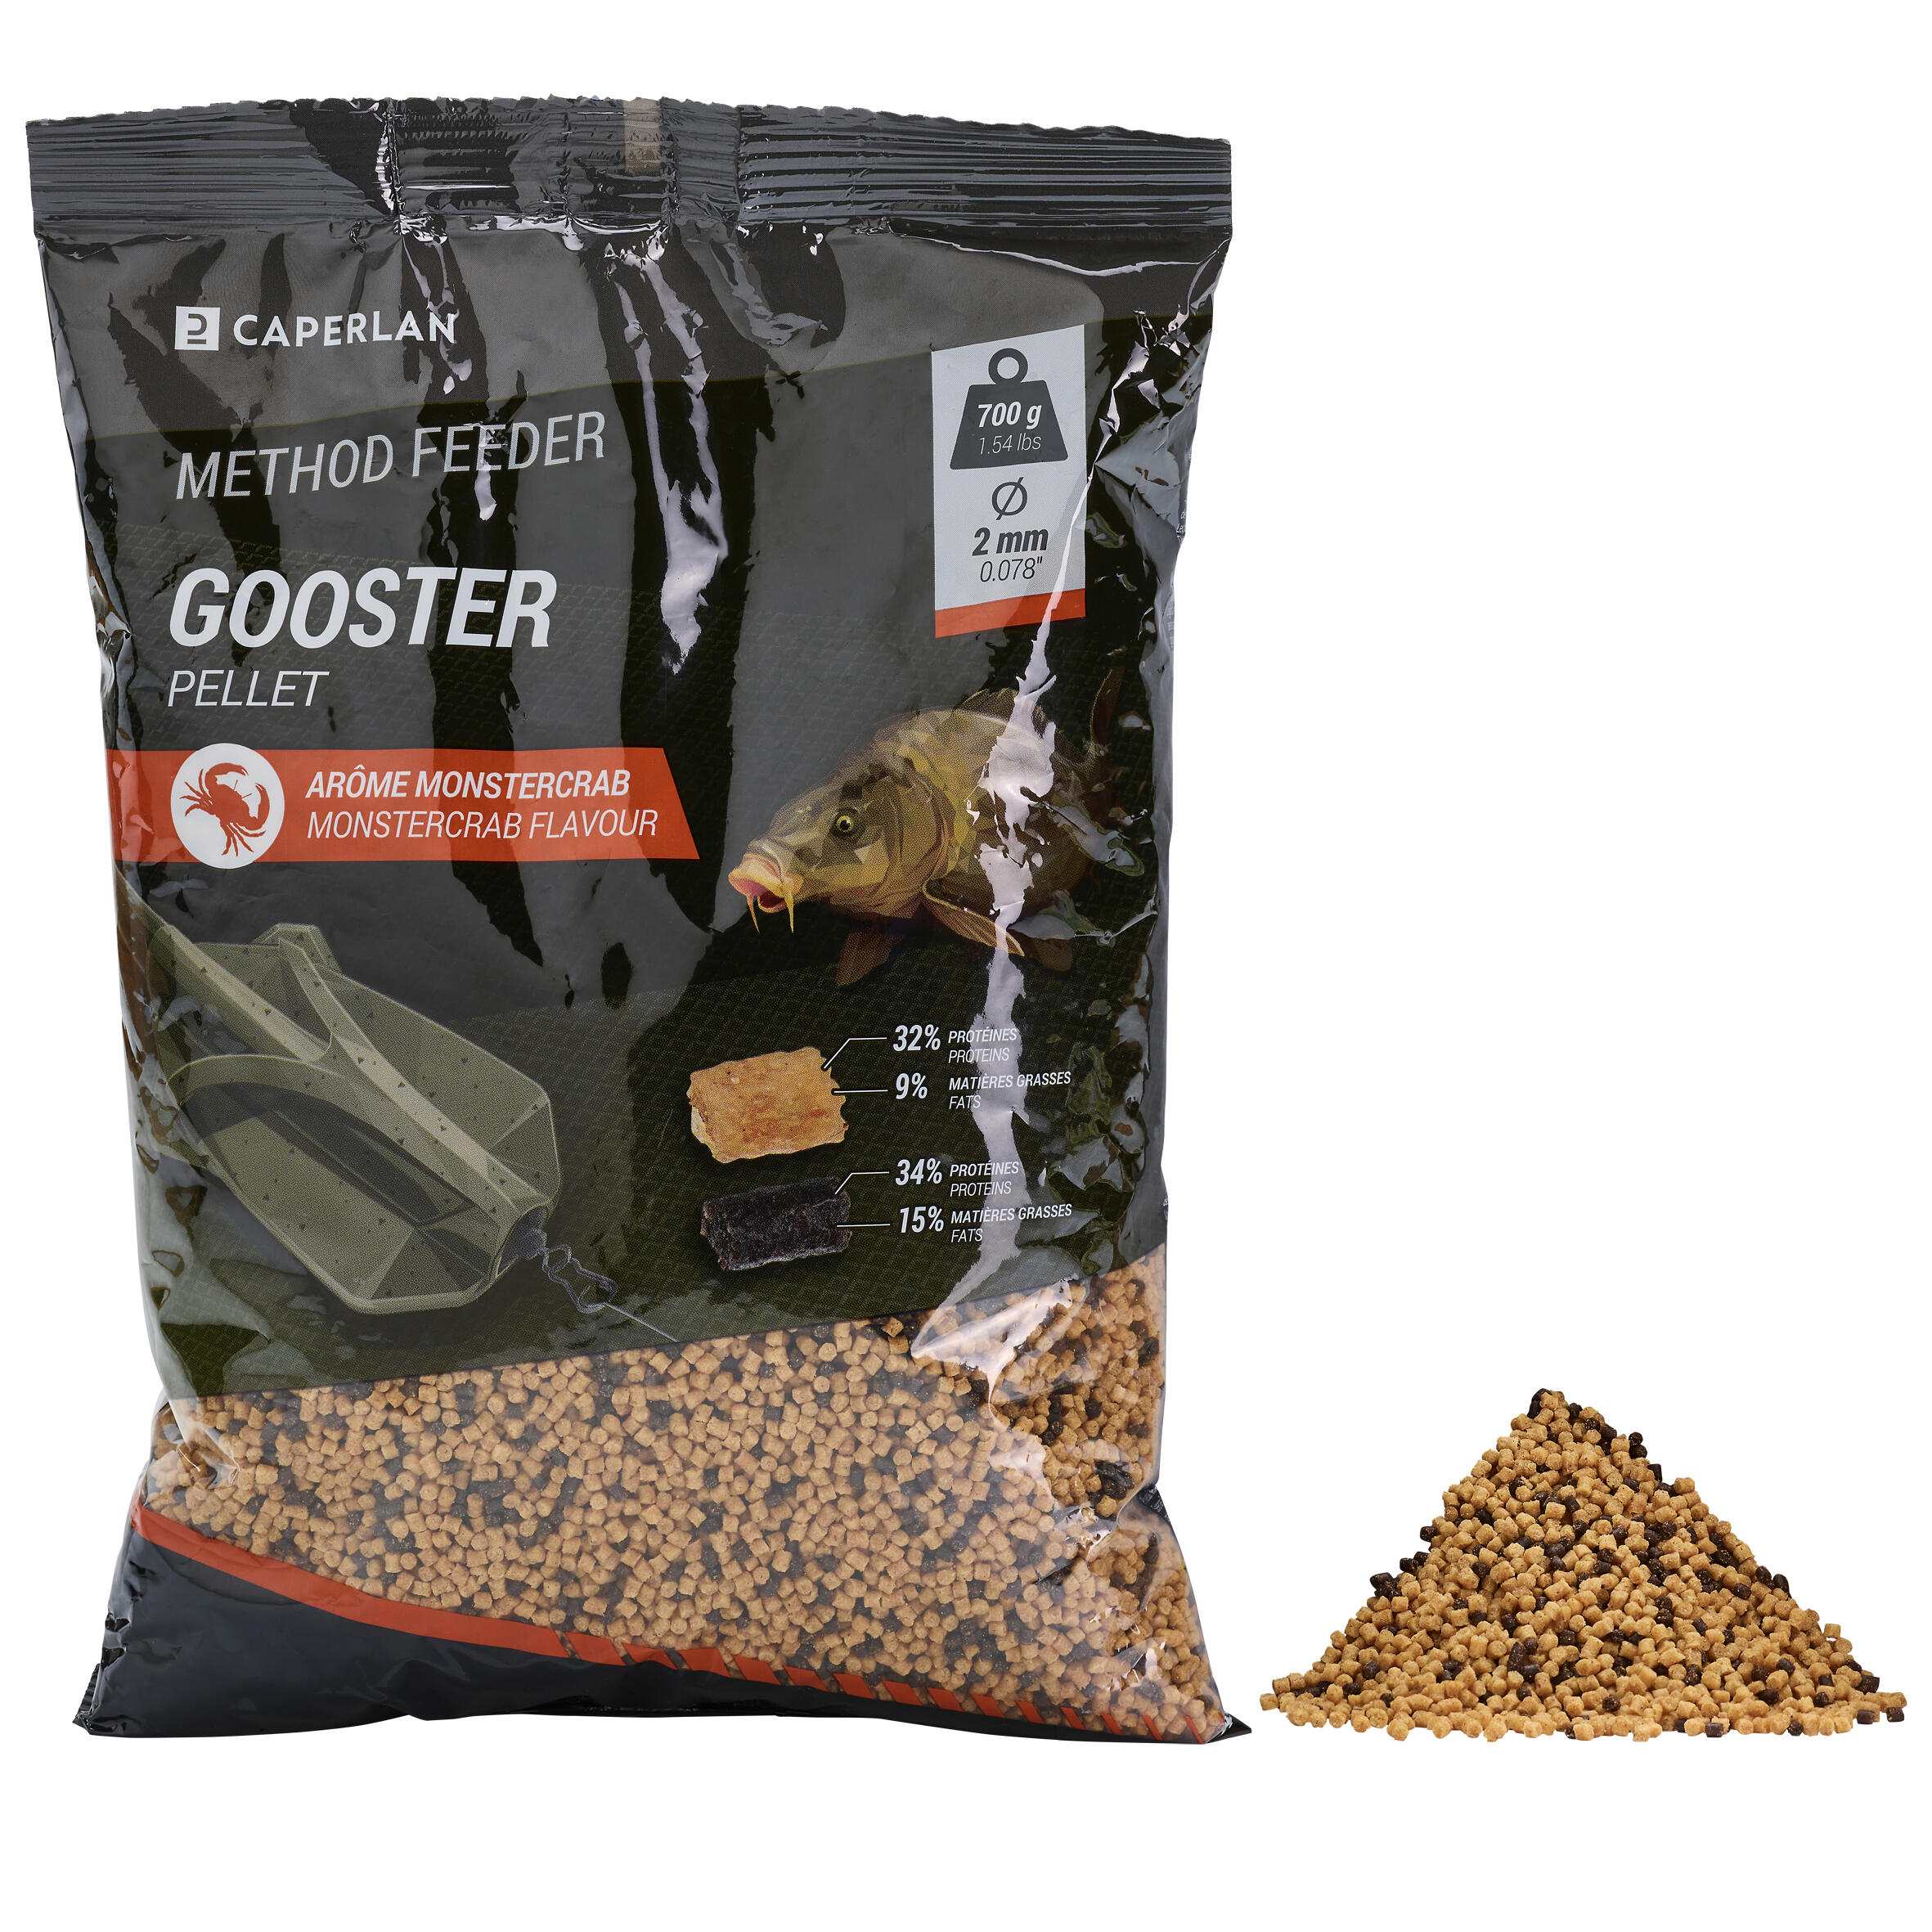 Method pellet feeder Gooster monstercrab 700g 1/5